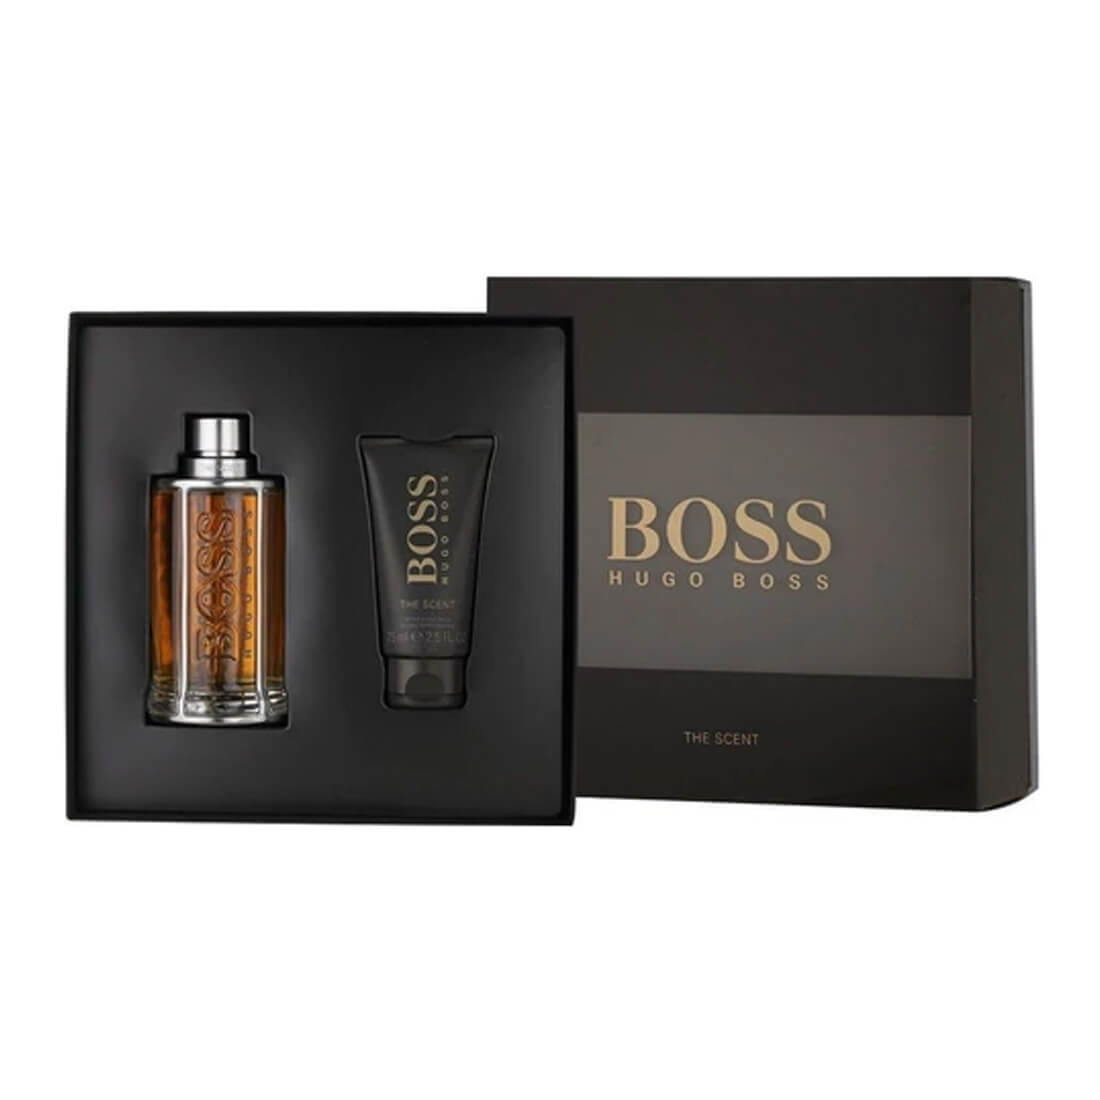 hugo boss fragrance gift set